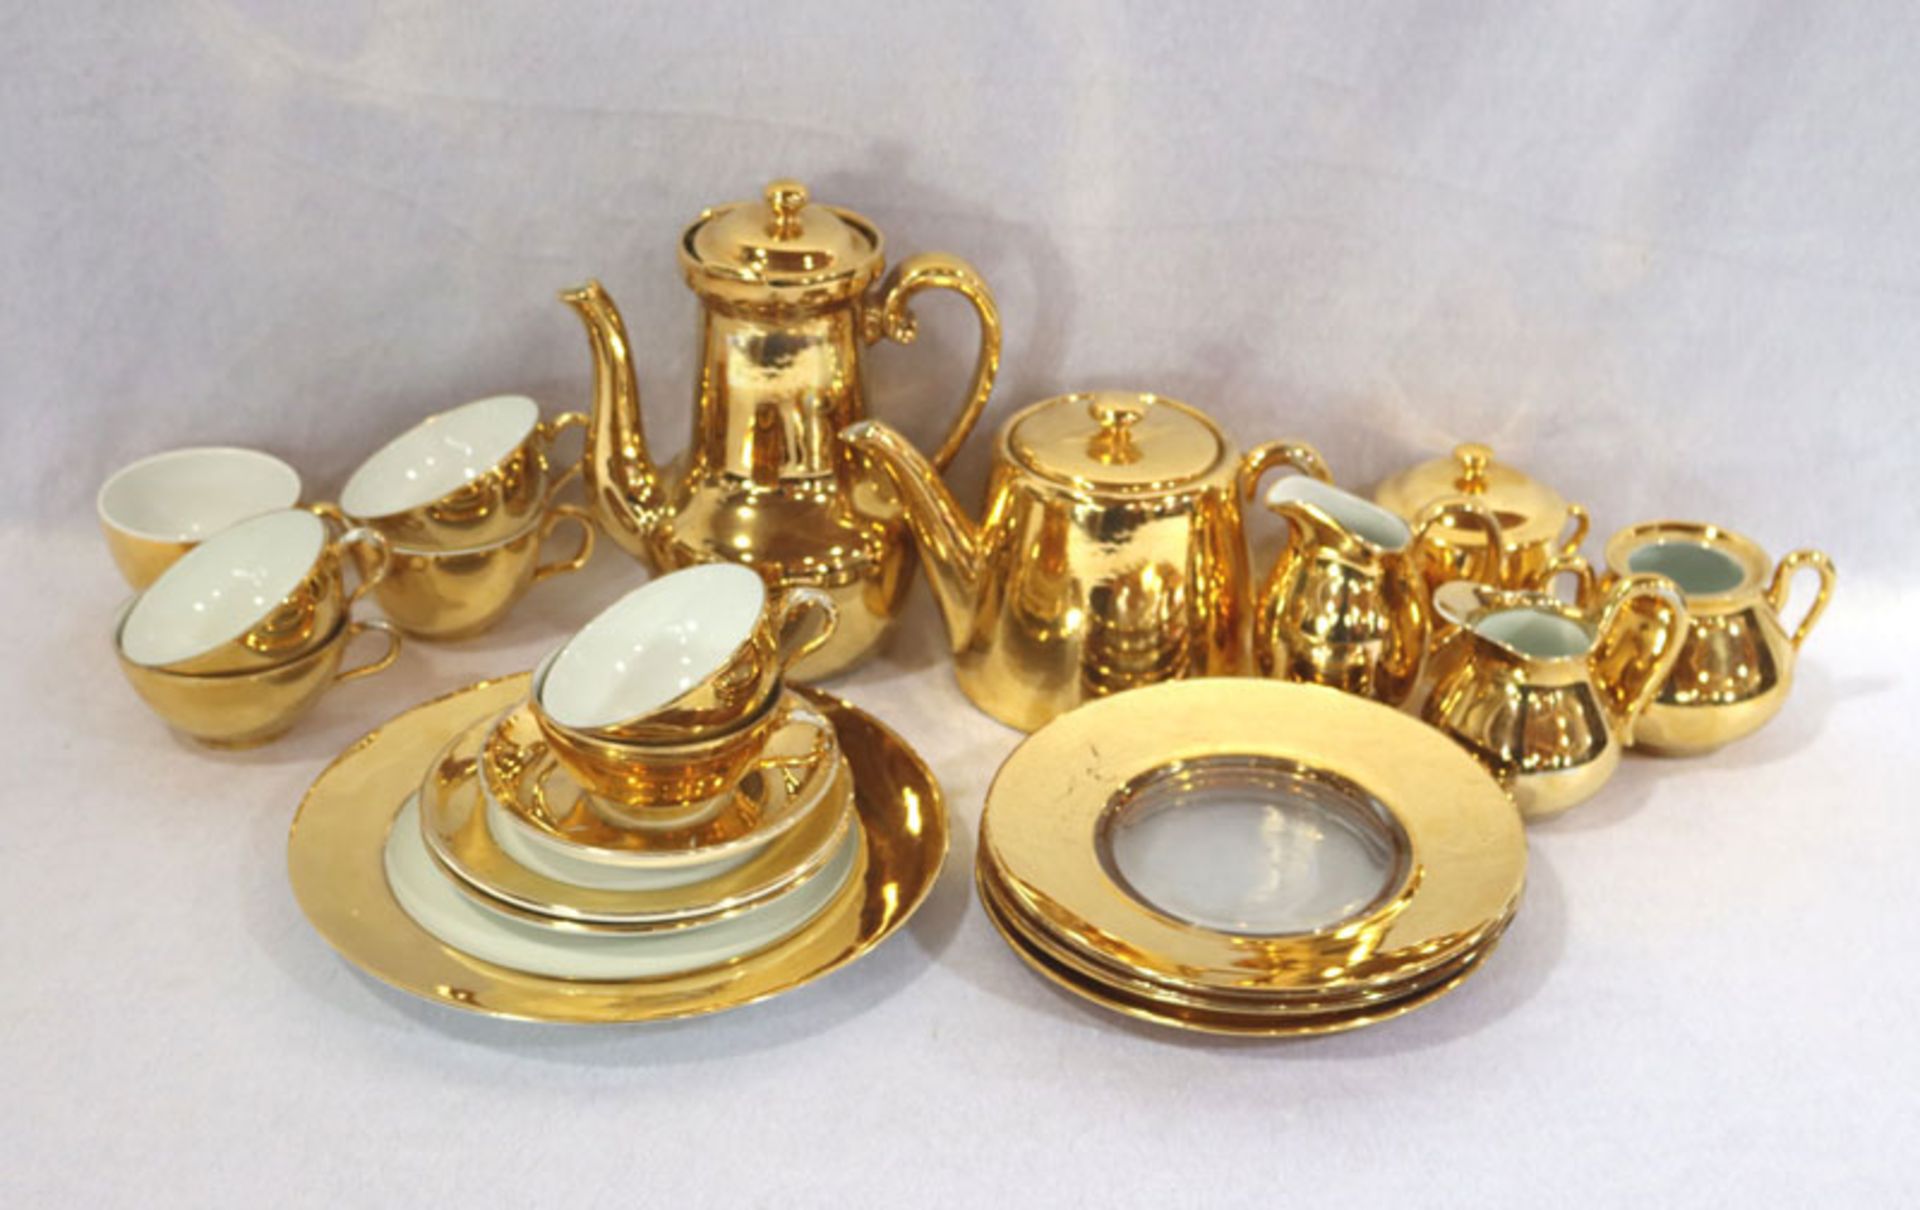 Porzellan Konvolut, Royal Worcester und Limoges, goldfarben, Kaffee- und Teekanne, 2 Milchkännchen